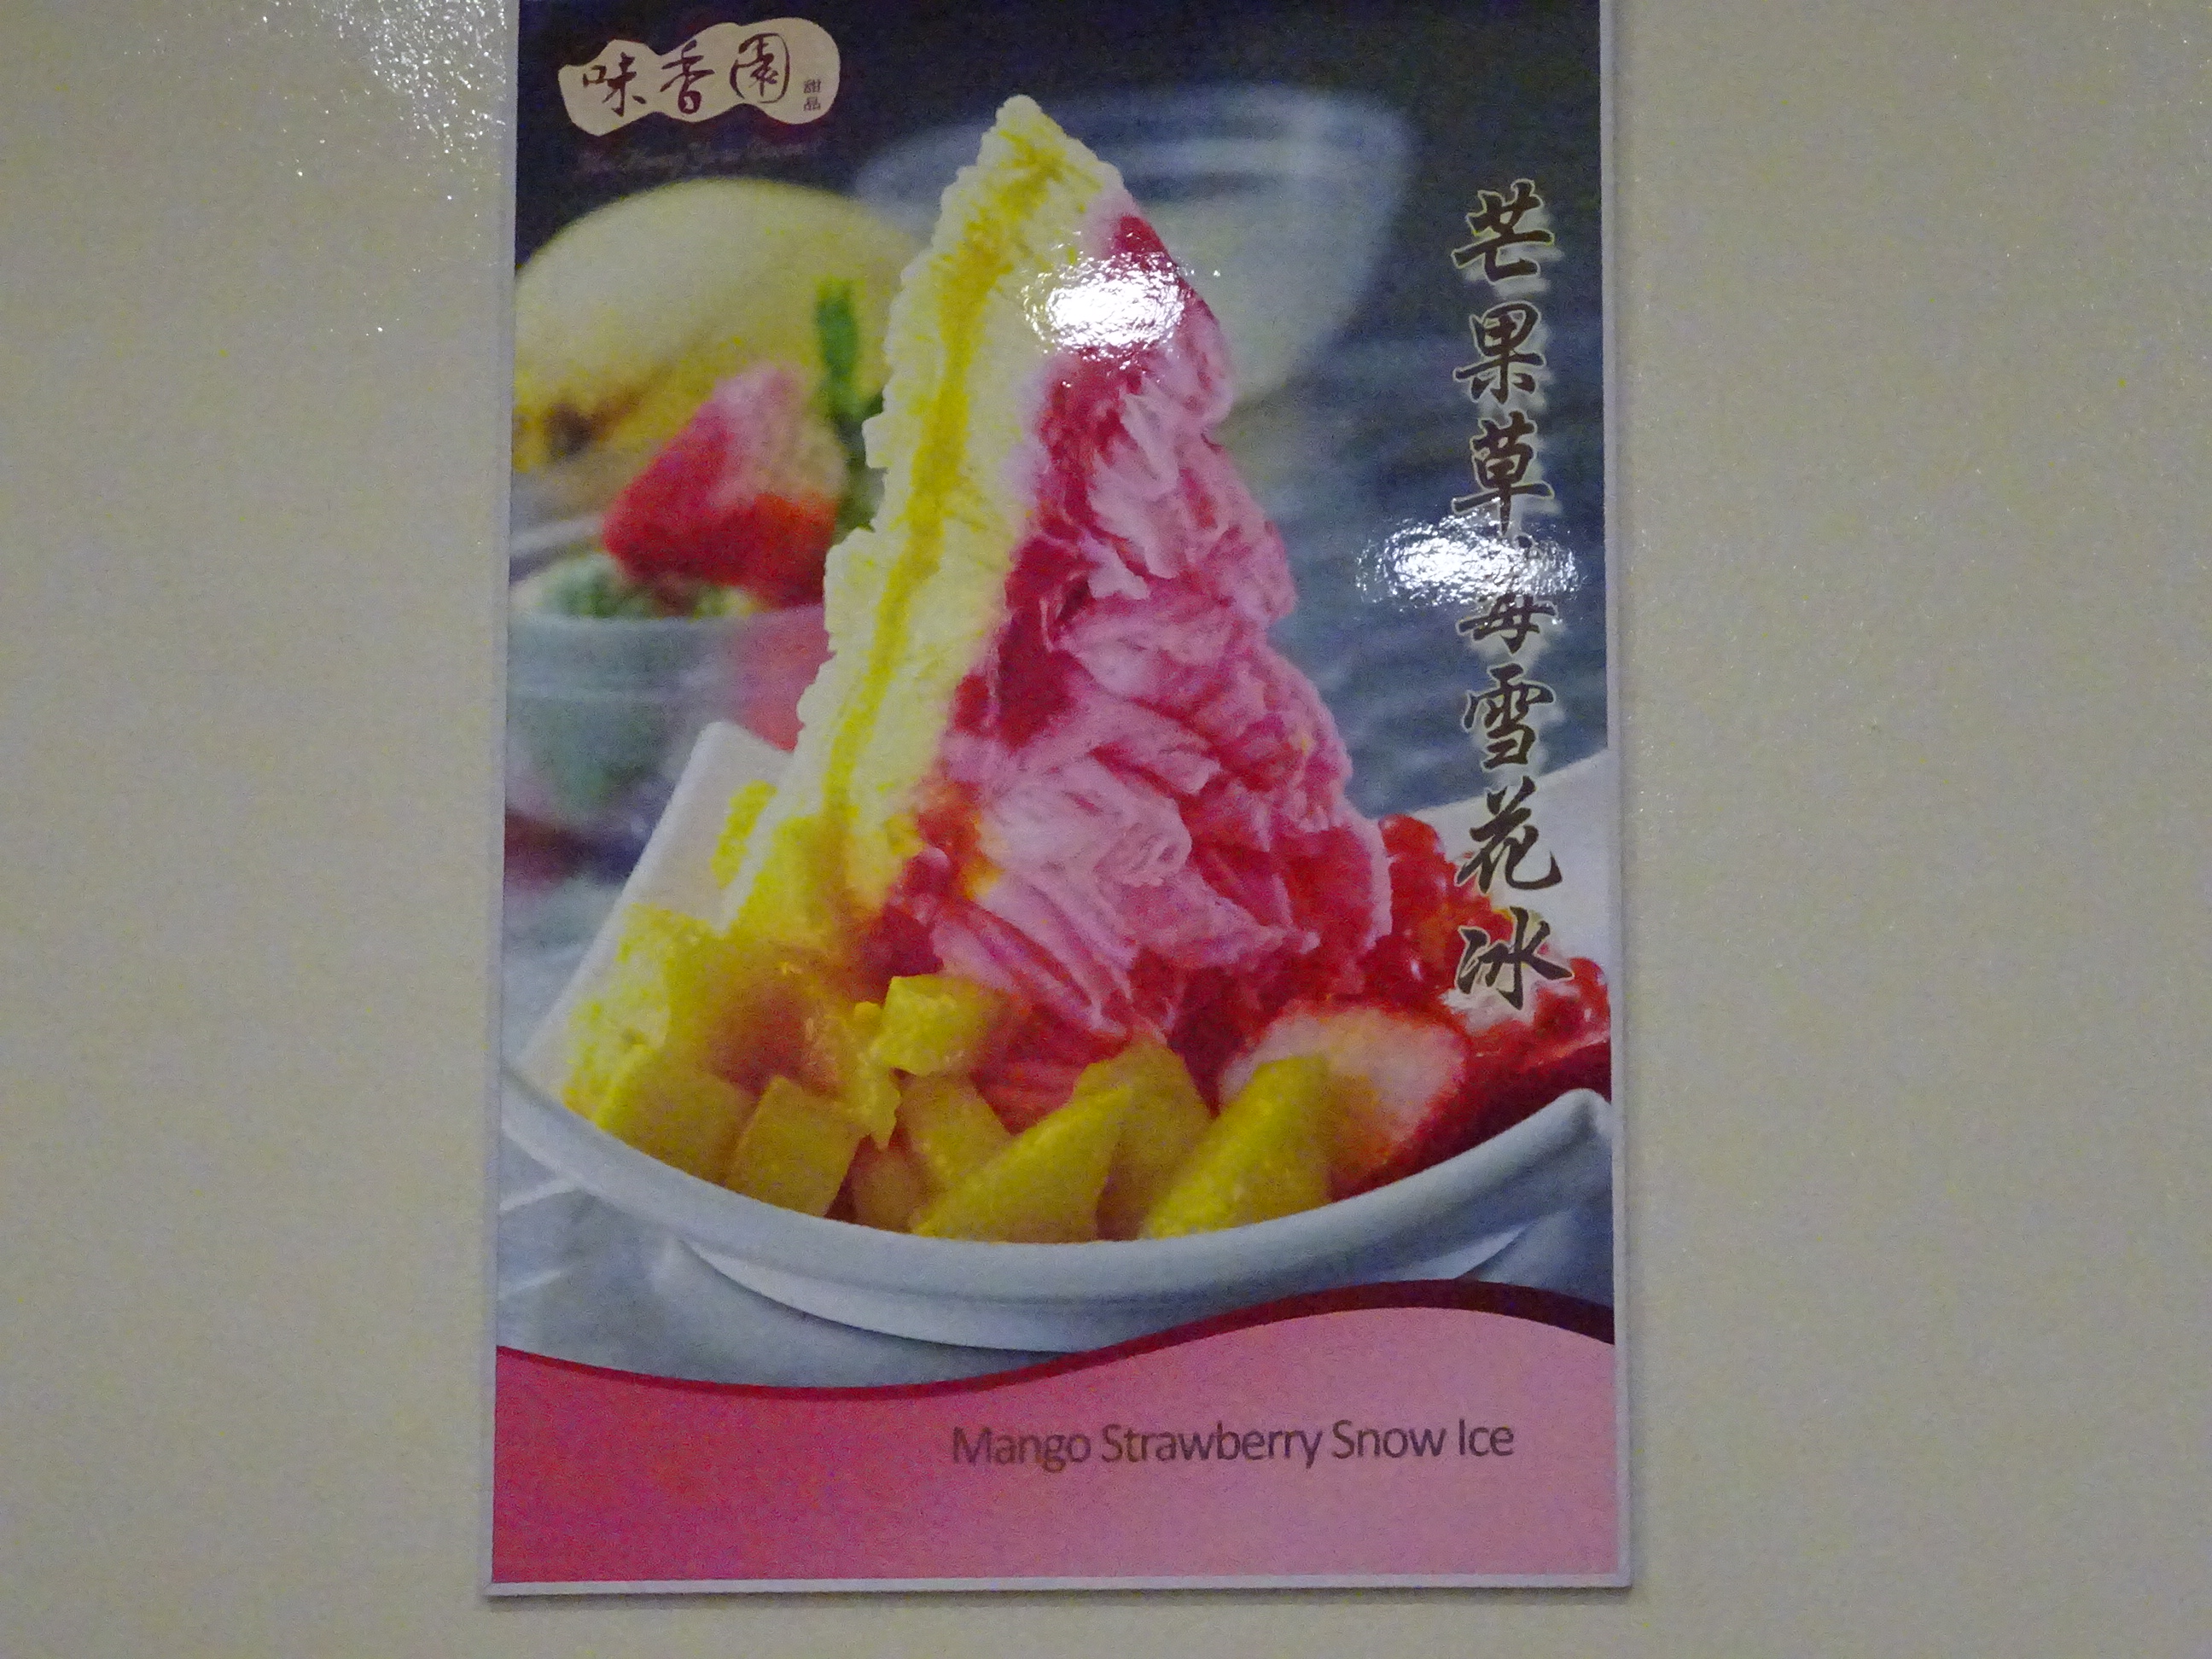 シンガポールの名物スイーツ店「味香園甜品 」イチオシのマンゴーストロベリーかき氷